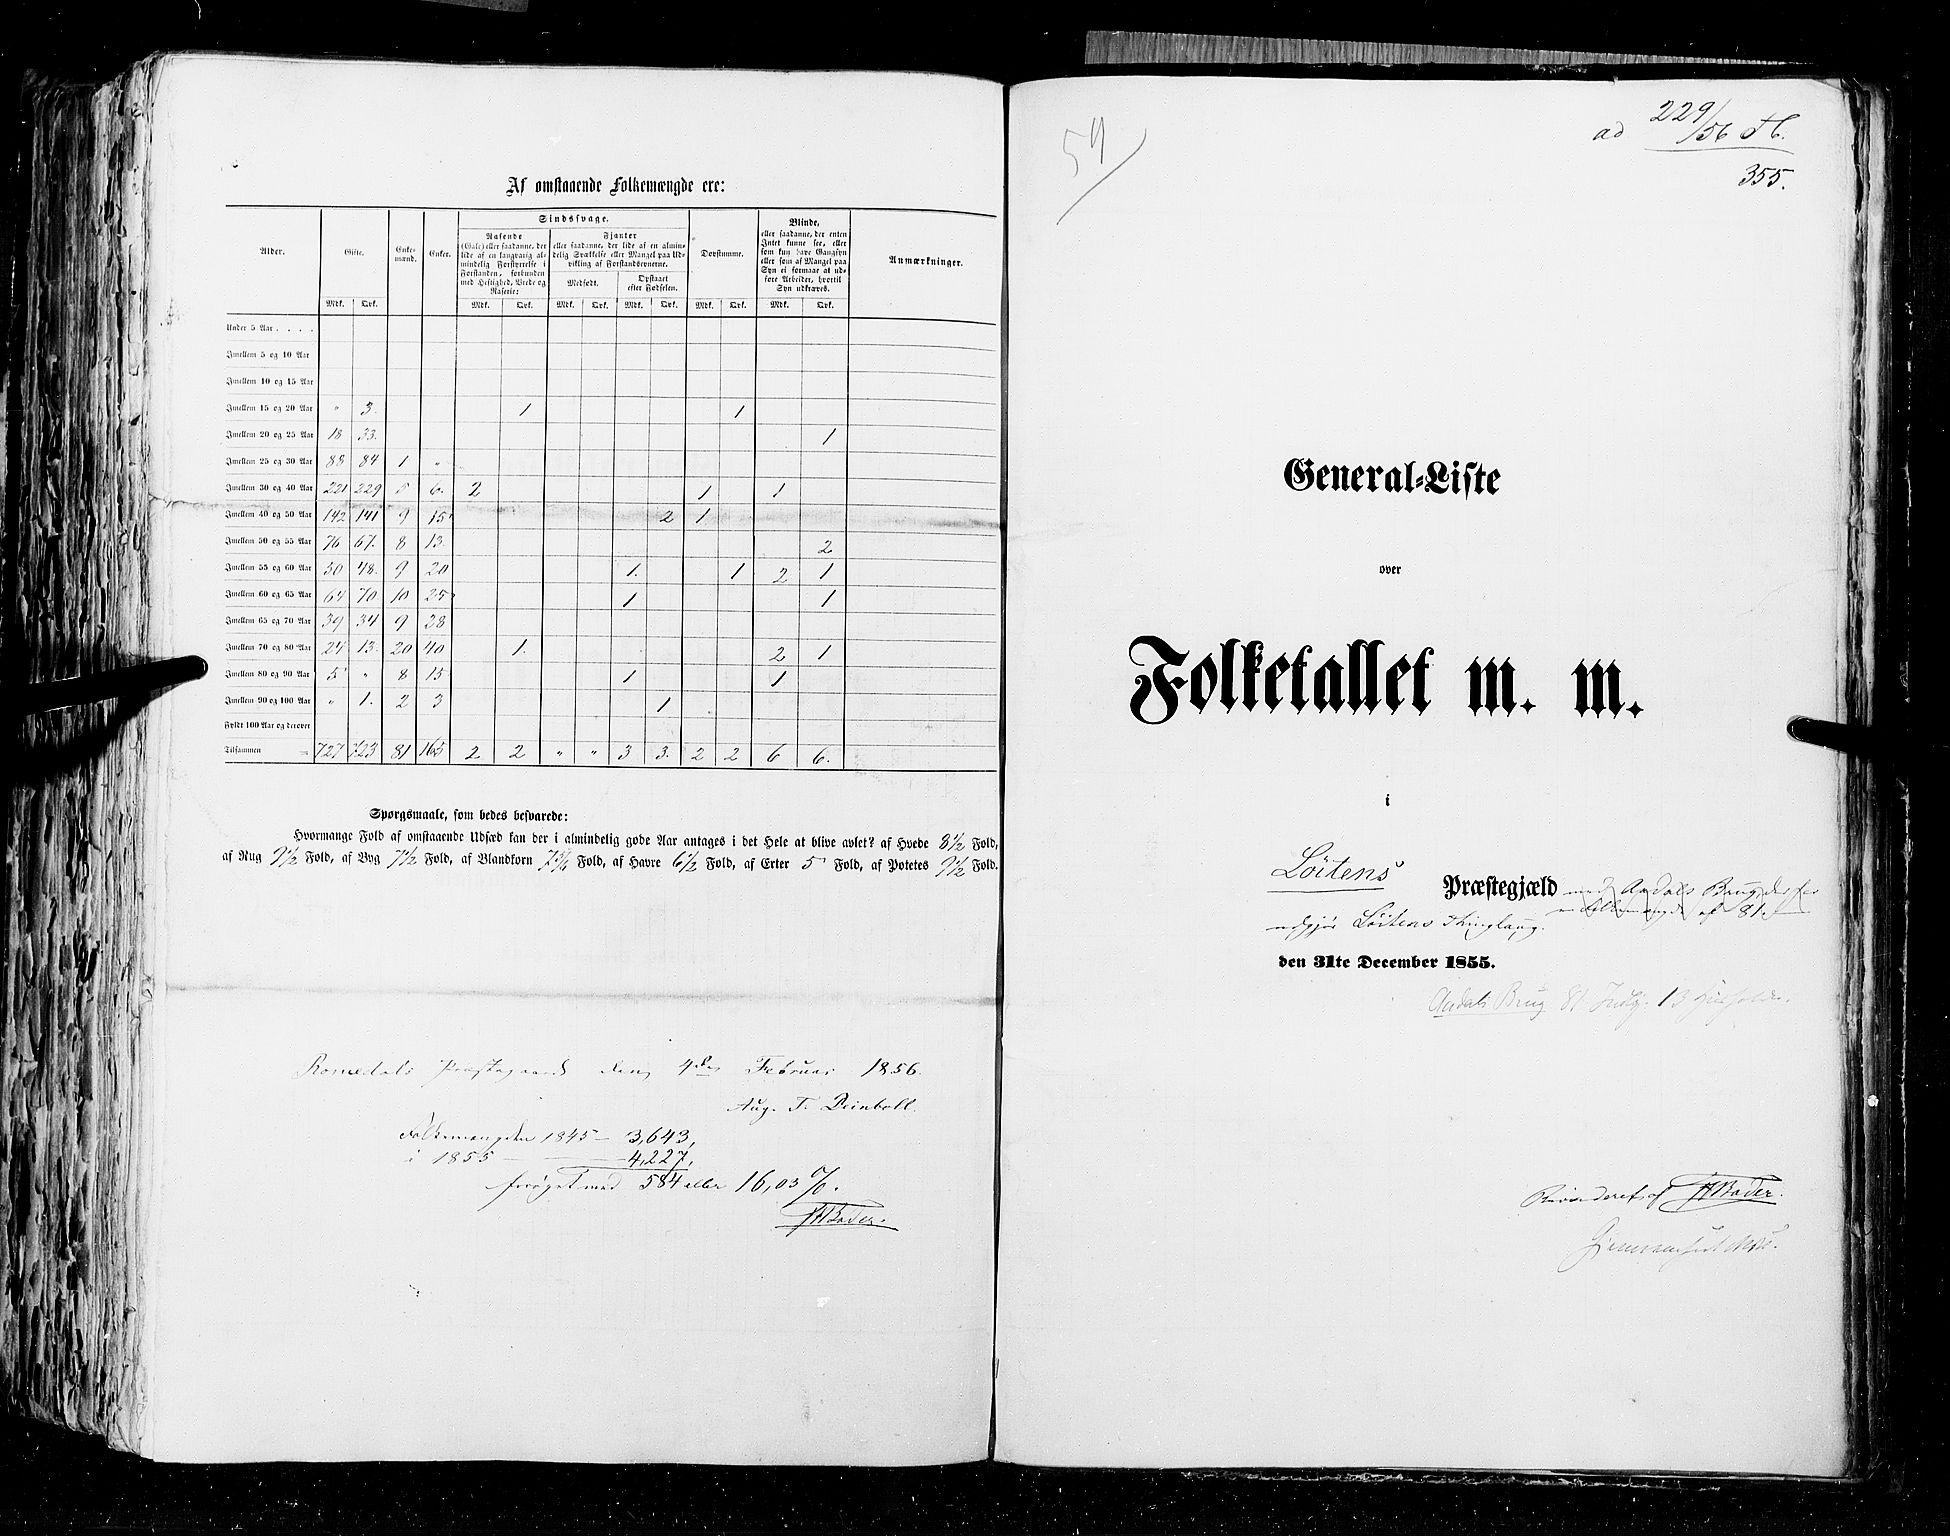 RA, Folketellingen 1855, bind 1: Akershus amt, Smålenenes amt og Hedemarken amt, 1855, s. 355